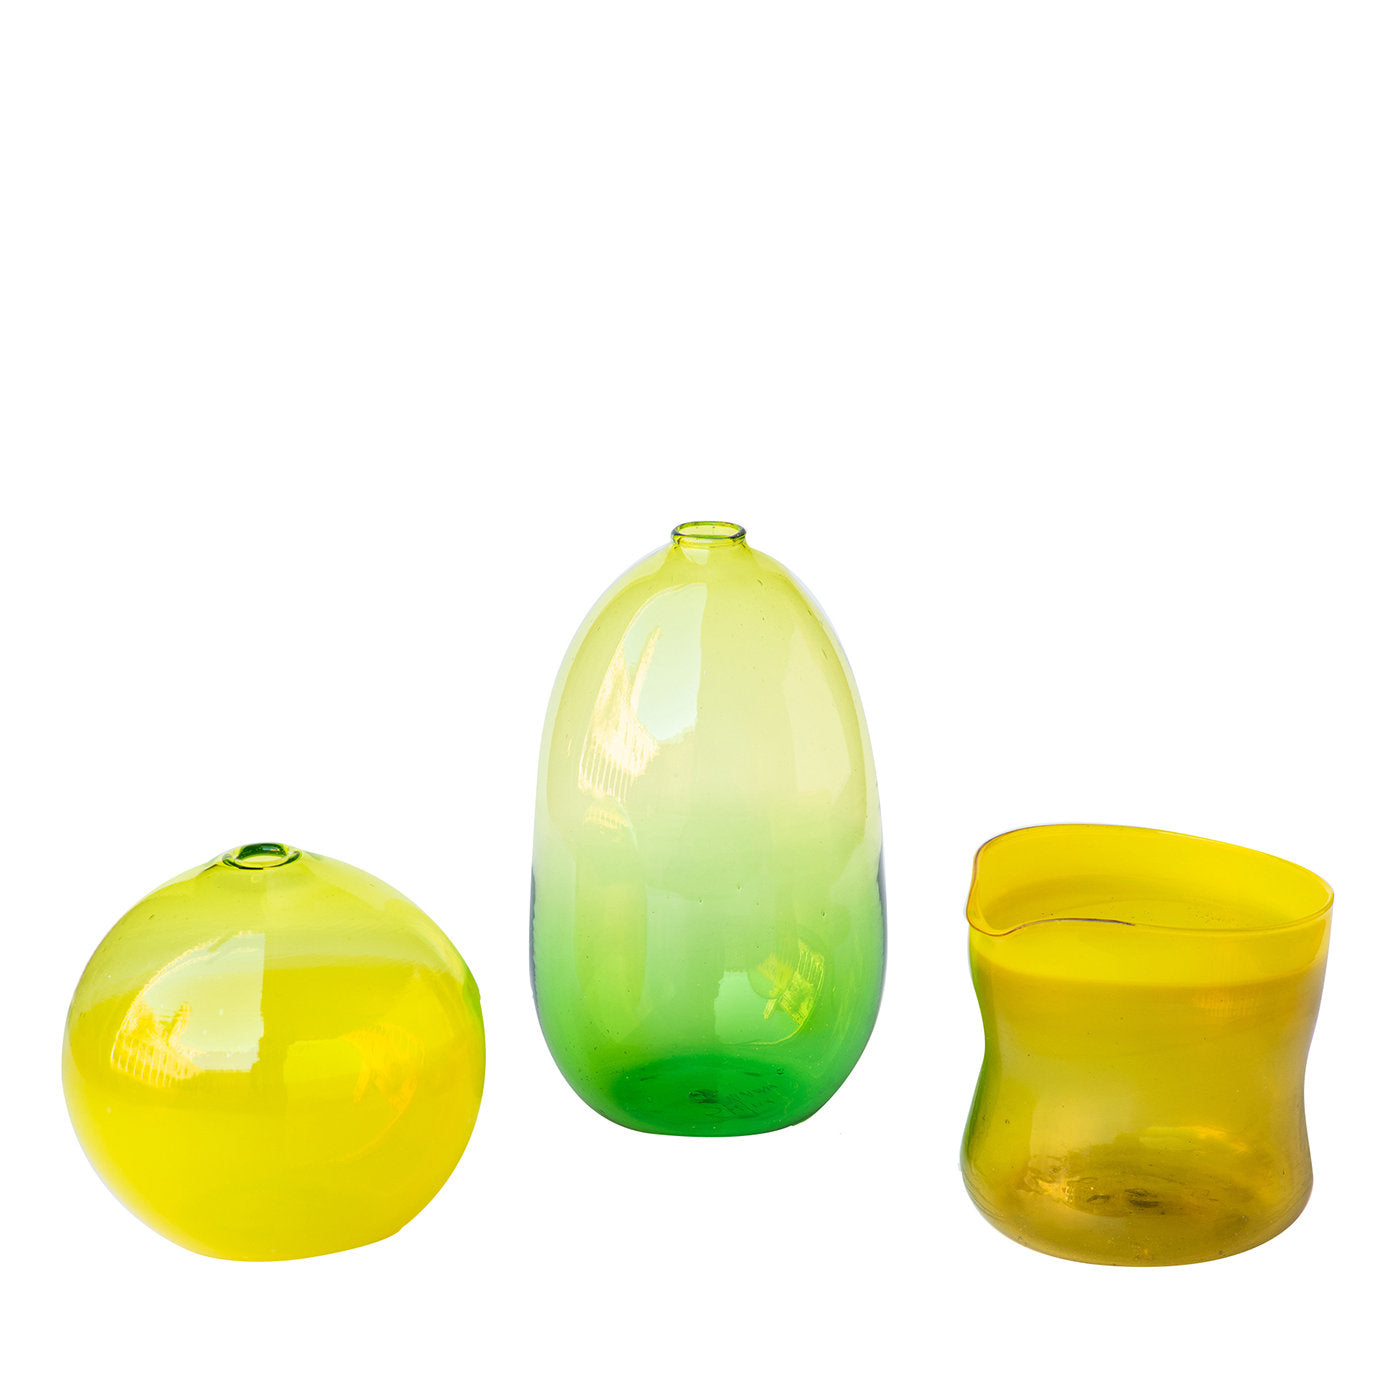 Satz von 3 gelb/grünen kleinen Vasen #1 - Hauptansicht